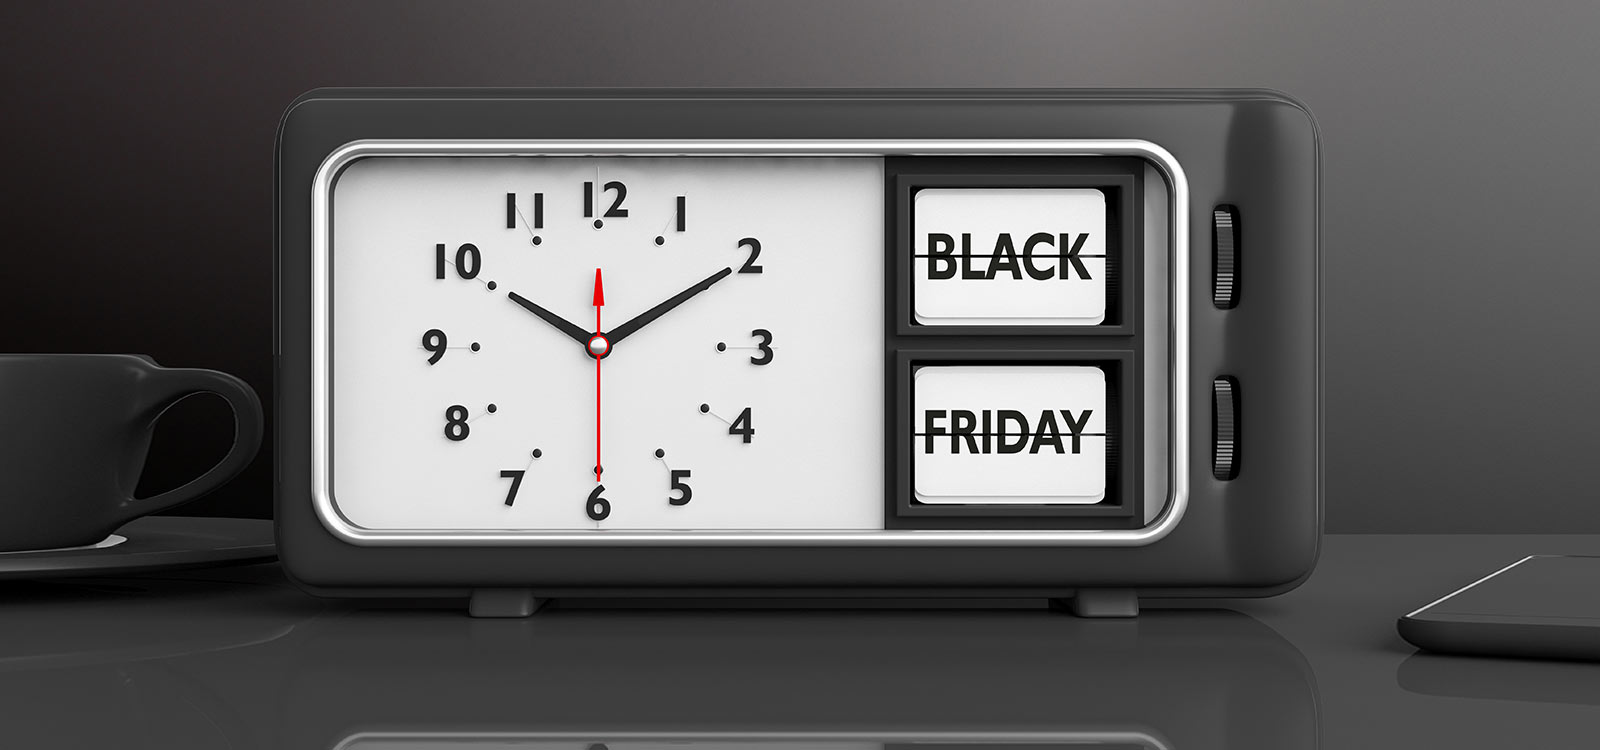 Nutzen Sie den Black Friday für Ihre Marketingaktionen